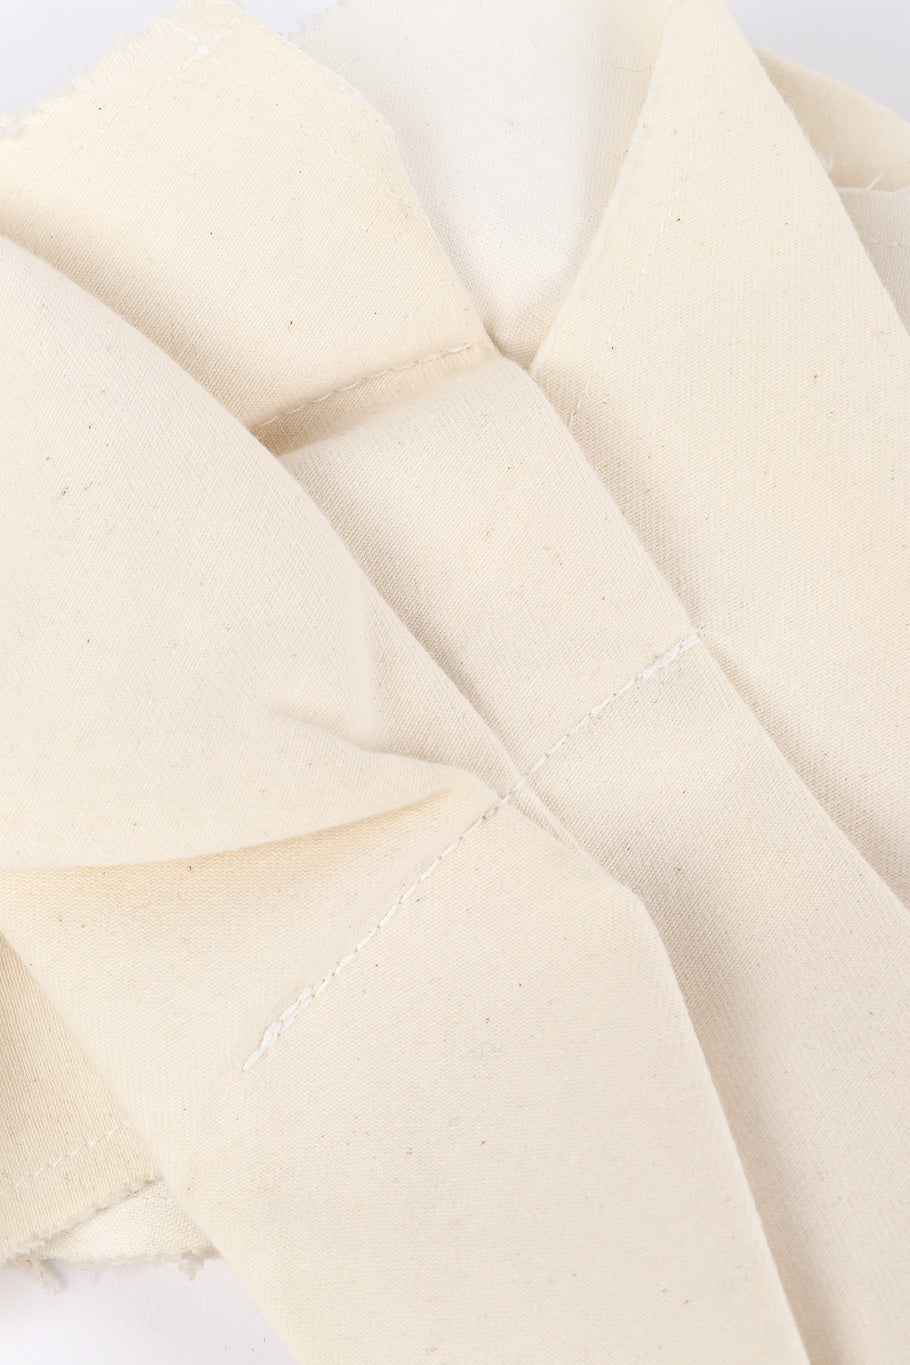 Commes Des Garçons canvas pleated vest fabric detail @recessla